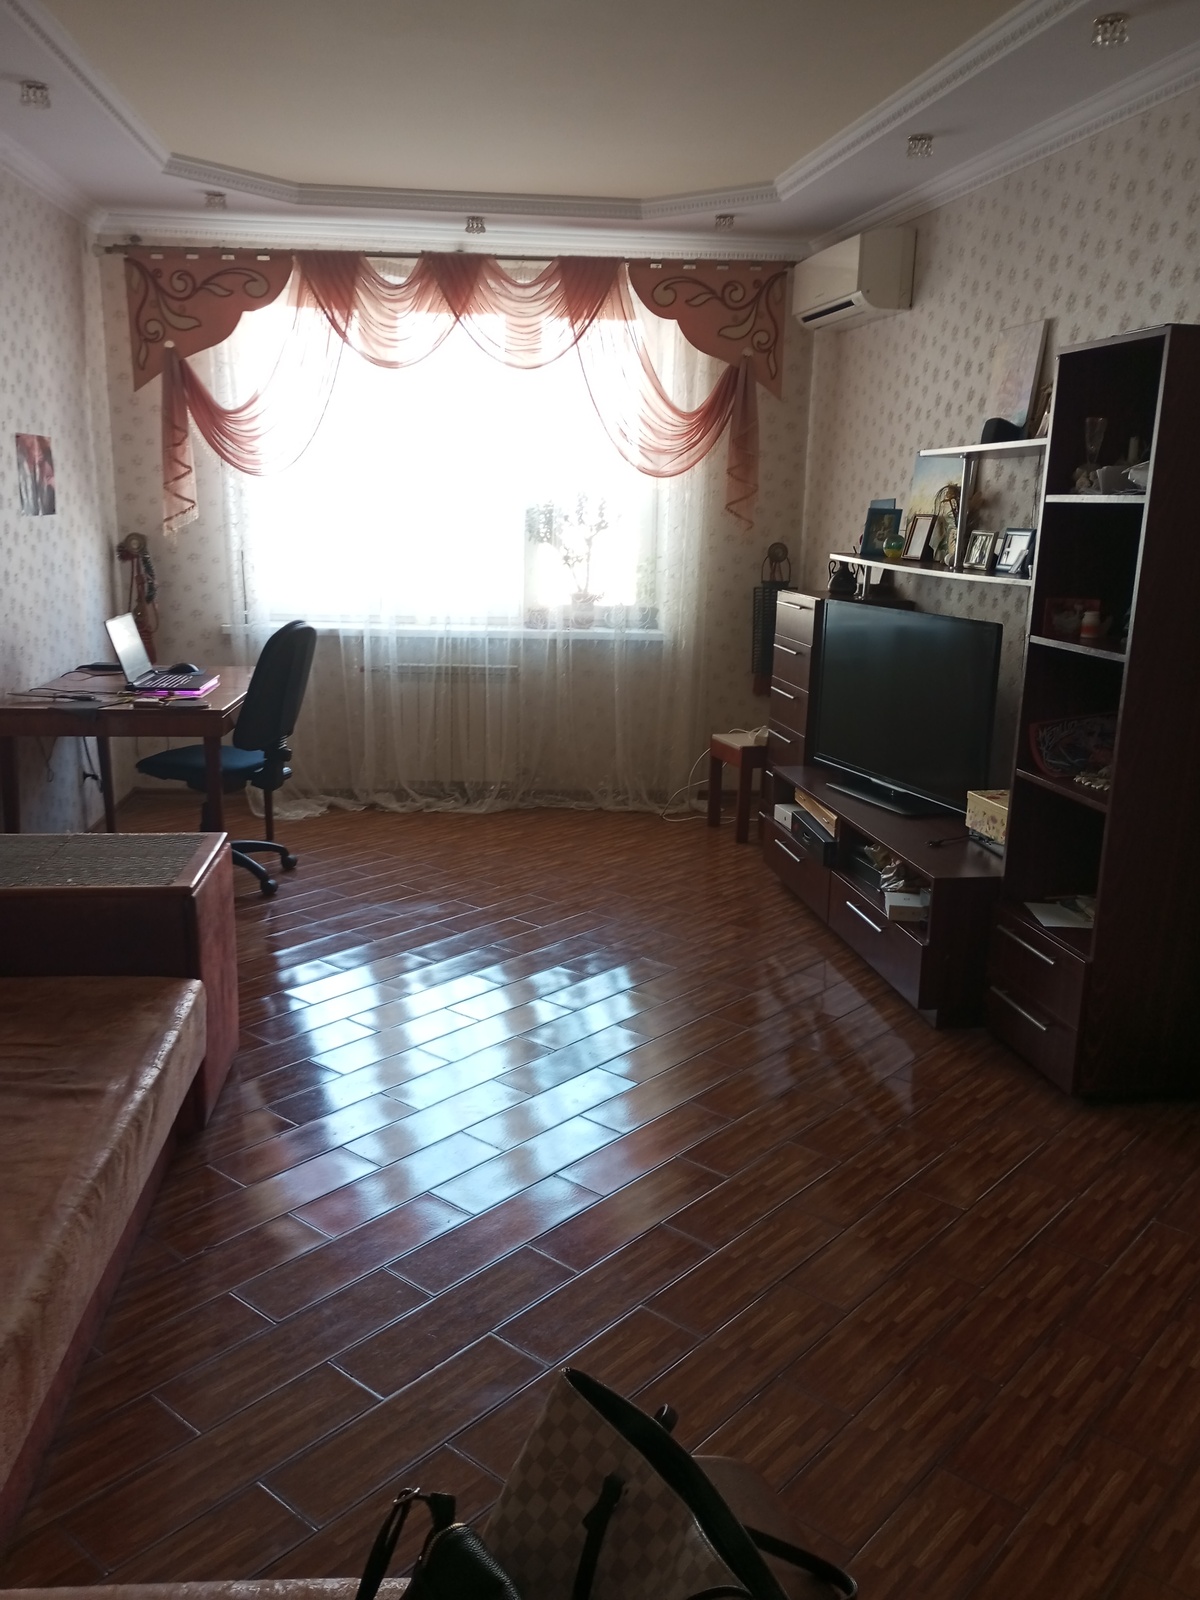 Продаи 4-х комнатную квартиру на Днепровской набережной 23